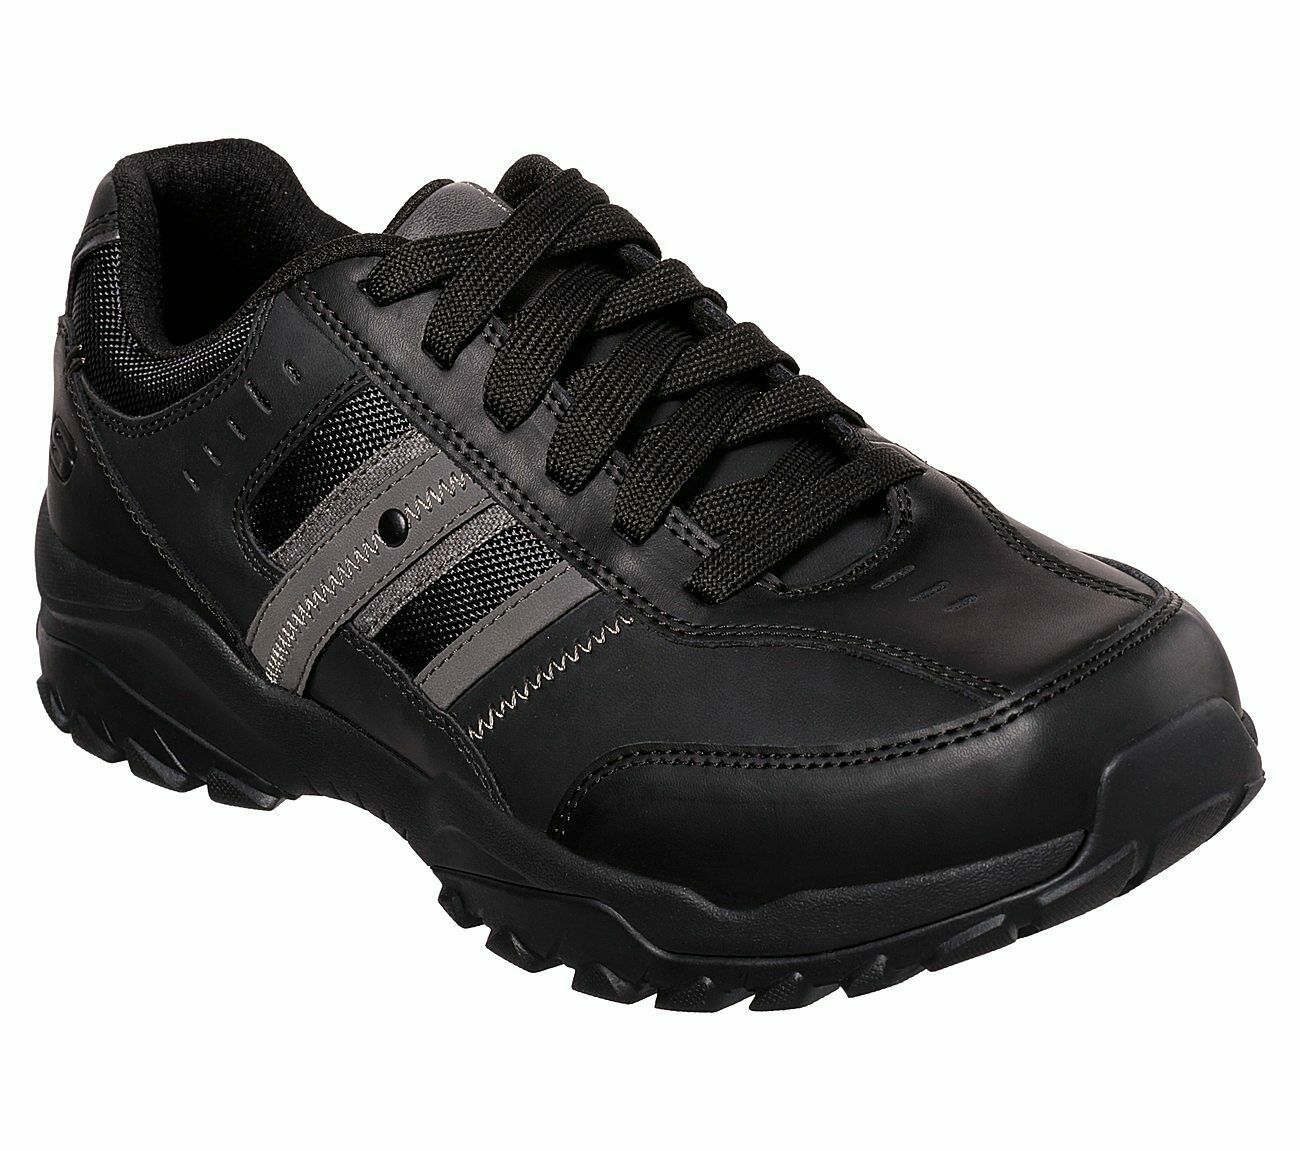 Skechers Black Extra Wide Fit shoes Men Memory Foam Sporty Casual ...